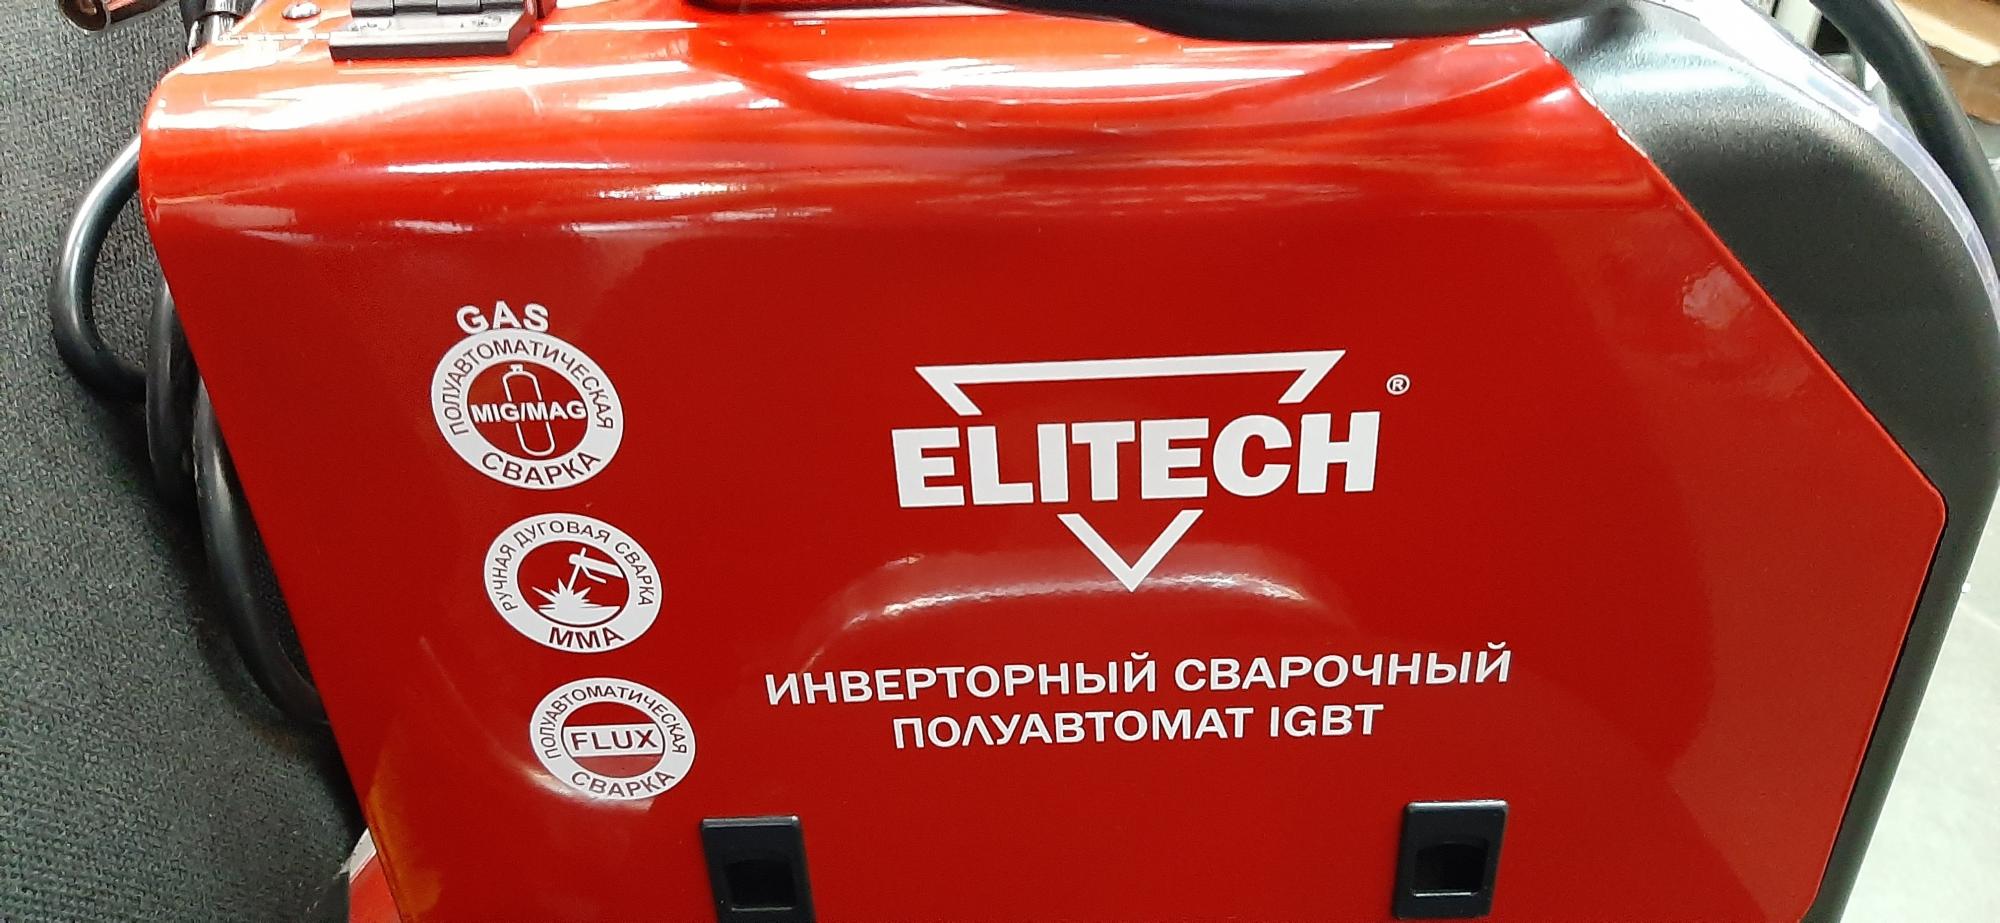 Elitech ис 120 син. Сварочный полуавтомат Elitech. Полуавтомат Элитеч. Elitech ИС 190 промо. Elitech ИС 200м промо.